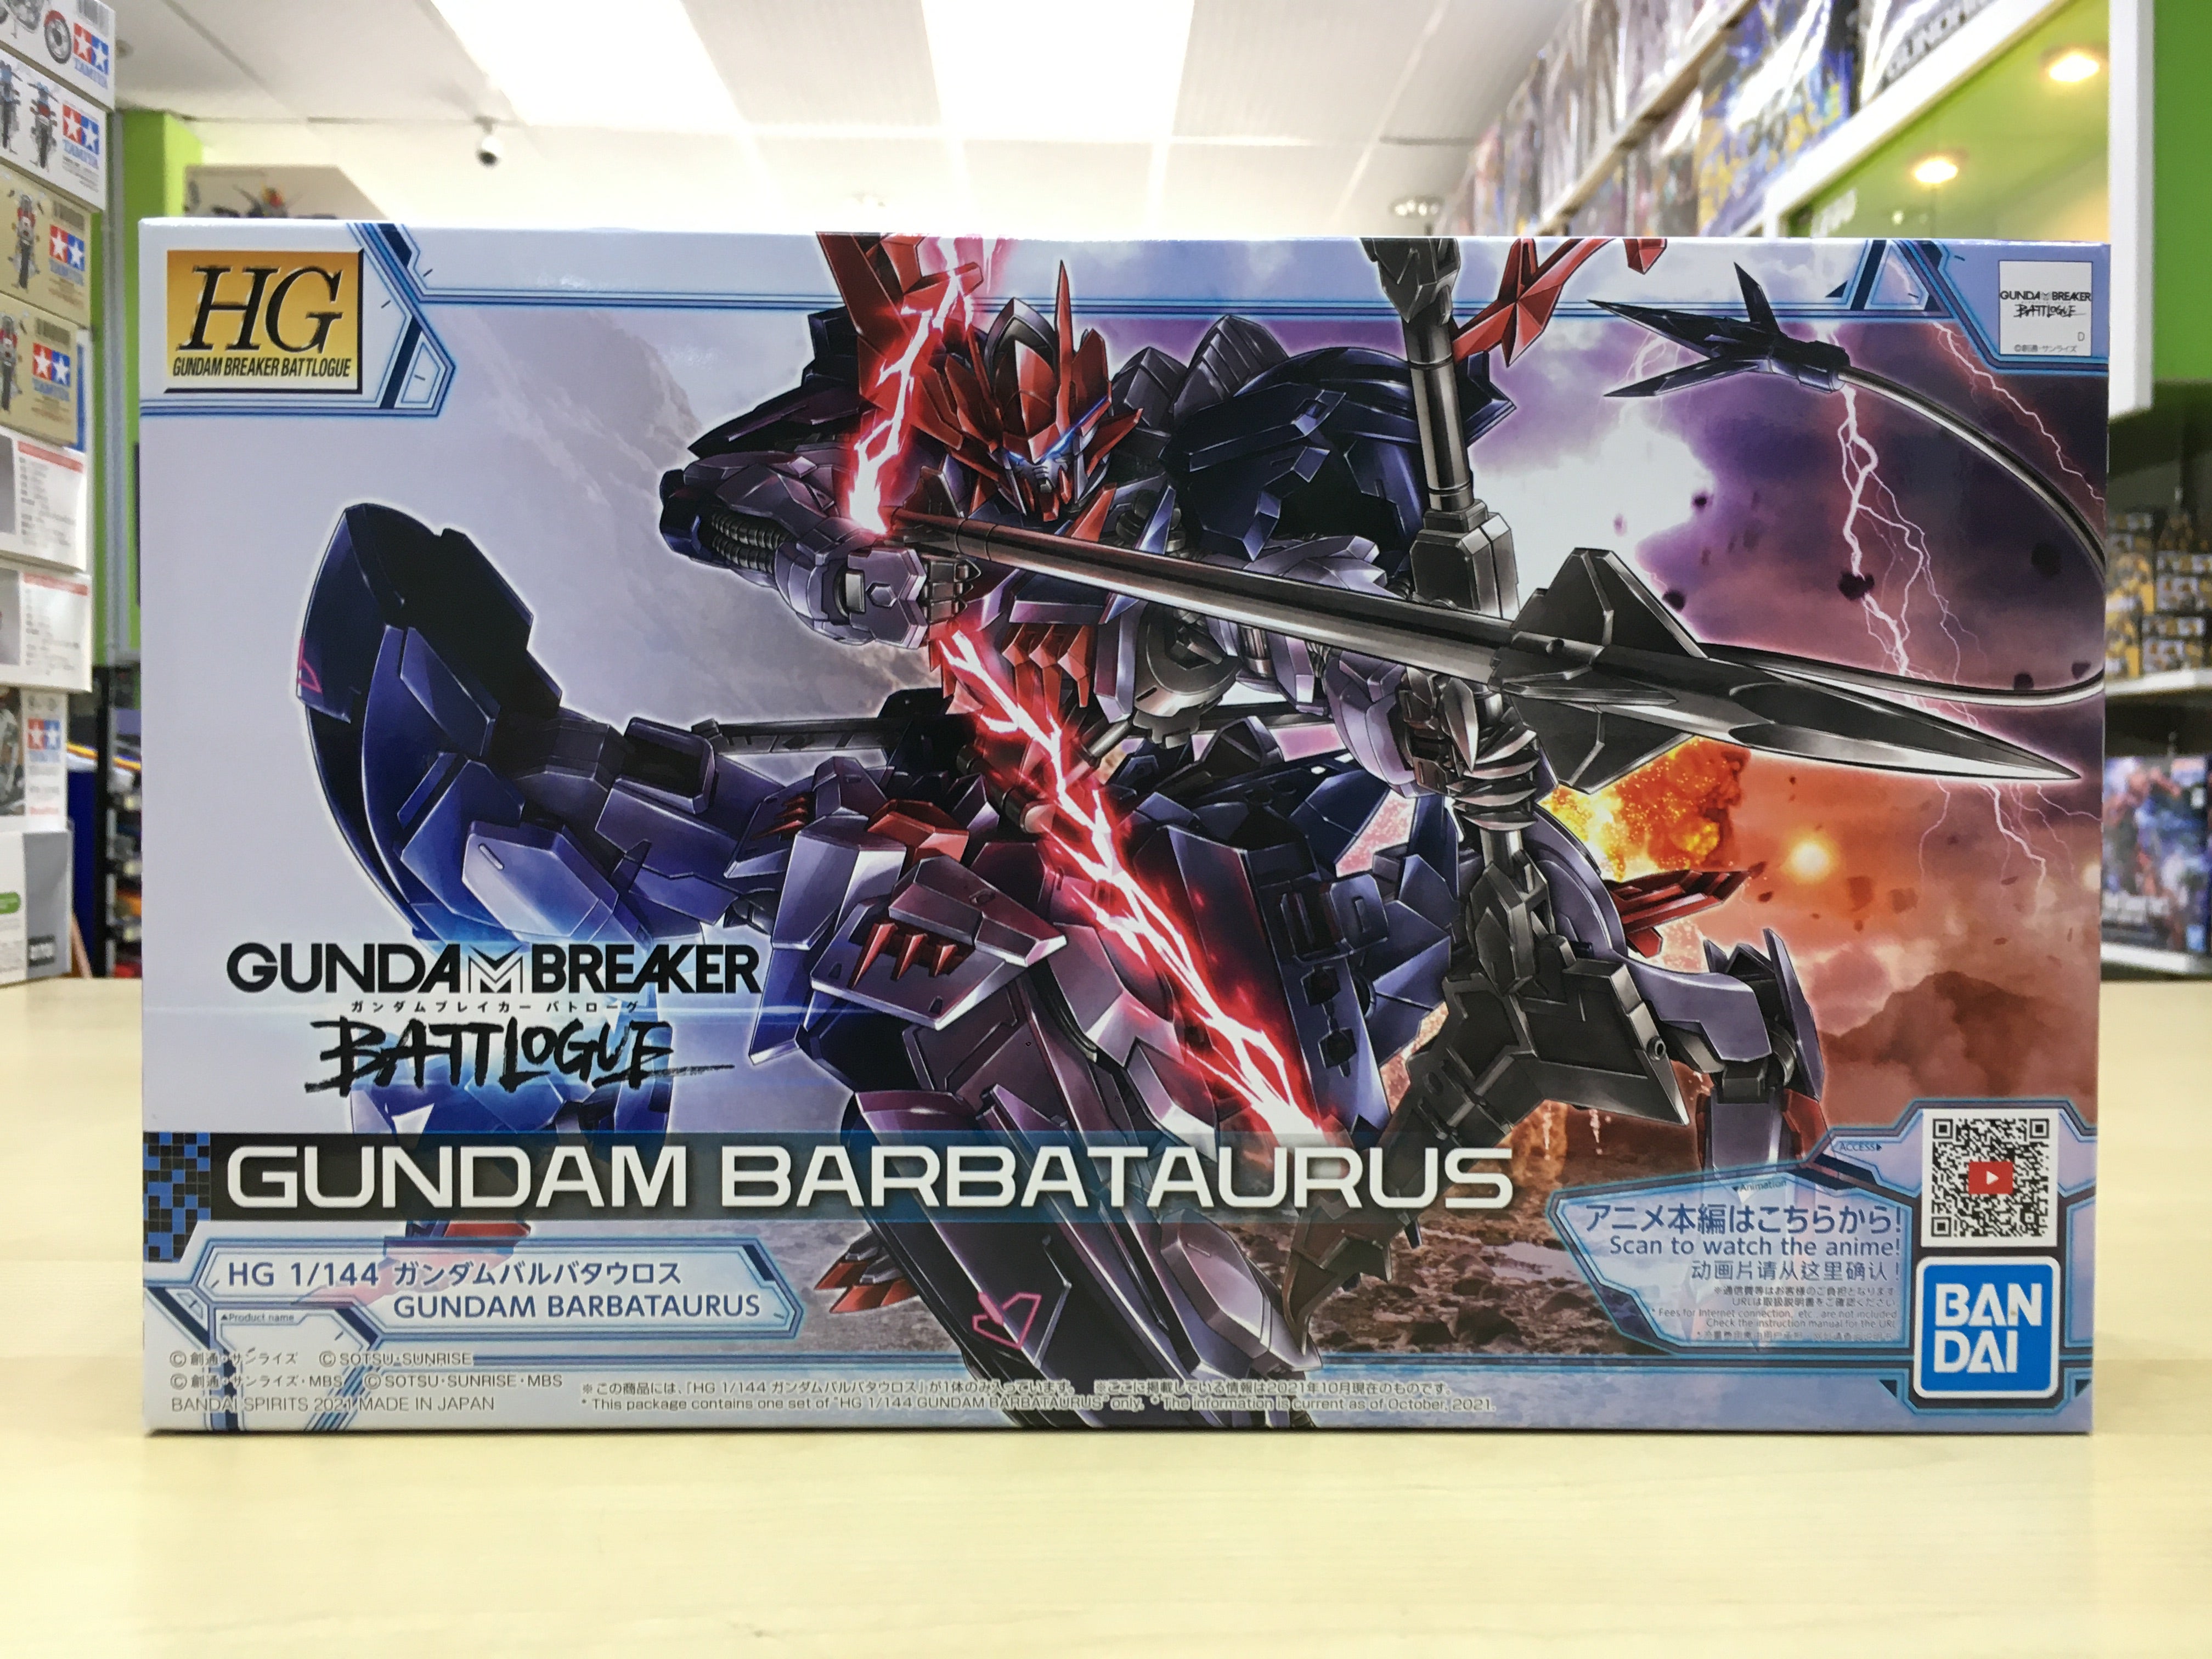 HG Gundam Barbataurus